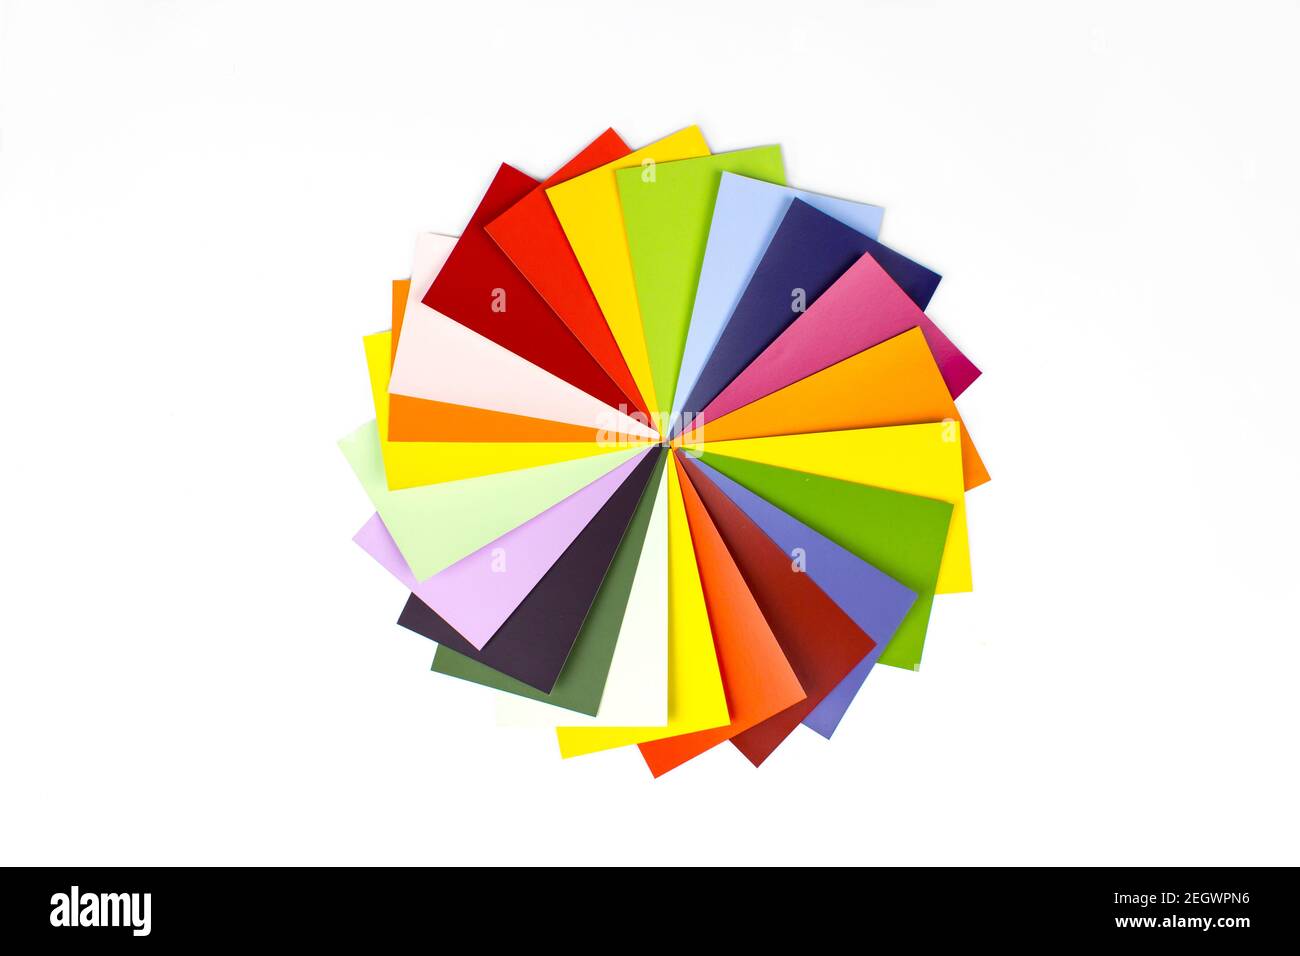 Guide des couleurs pour la sélection sur fond blanc. RVB. CMJN. Exemple de catalogue de couleurs Banque D'Images